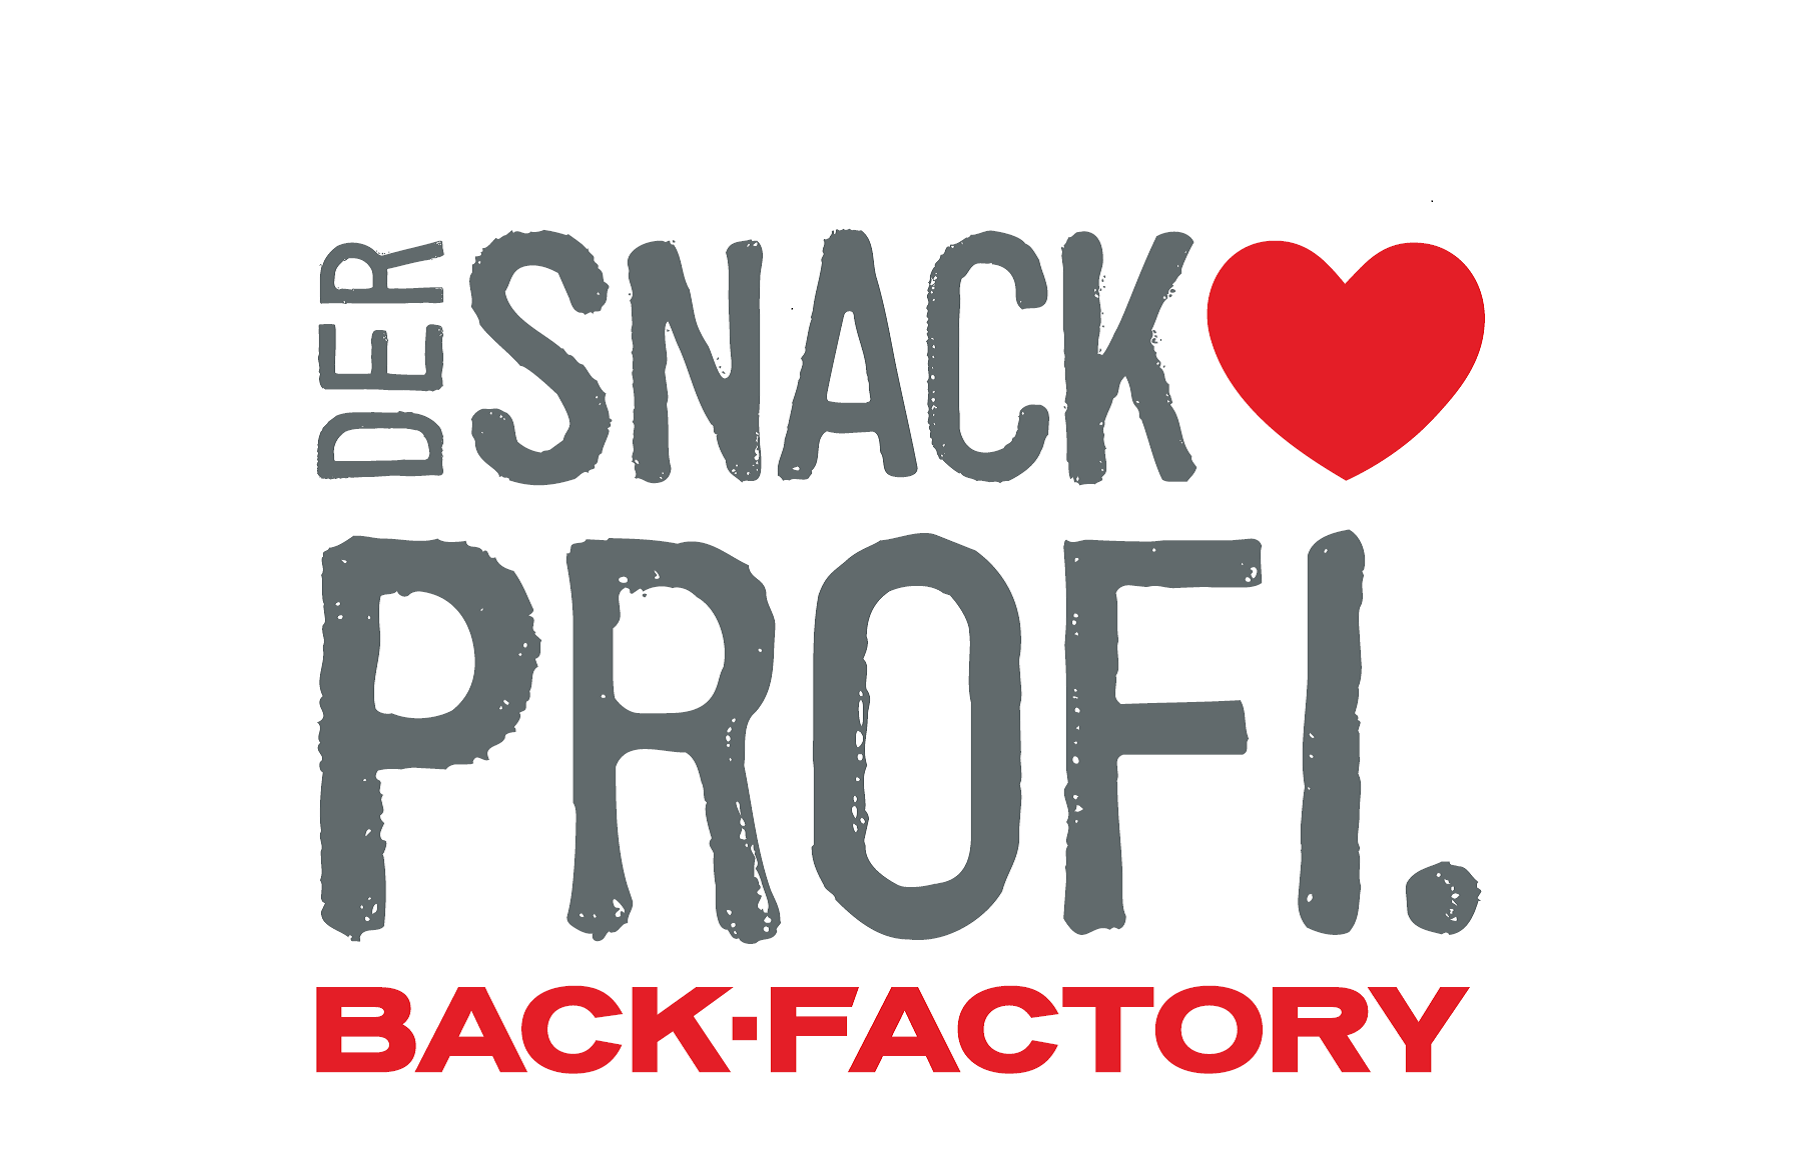 Der Snack-Profi
Back-Factory Hannover